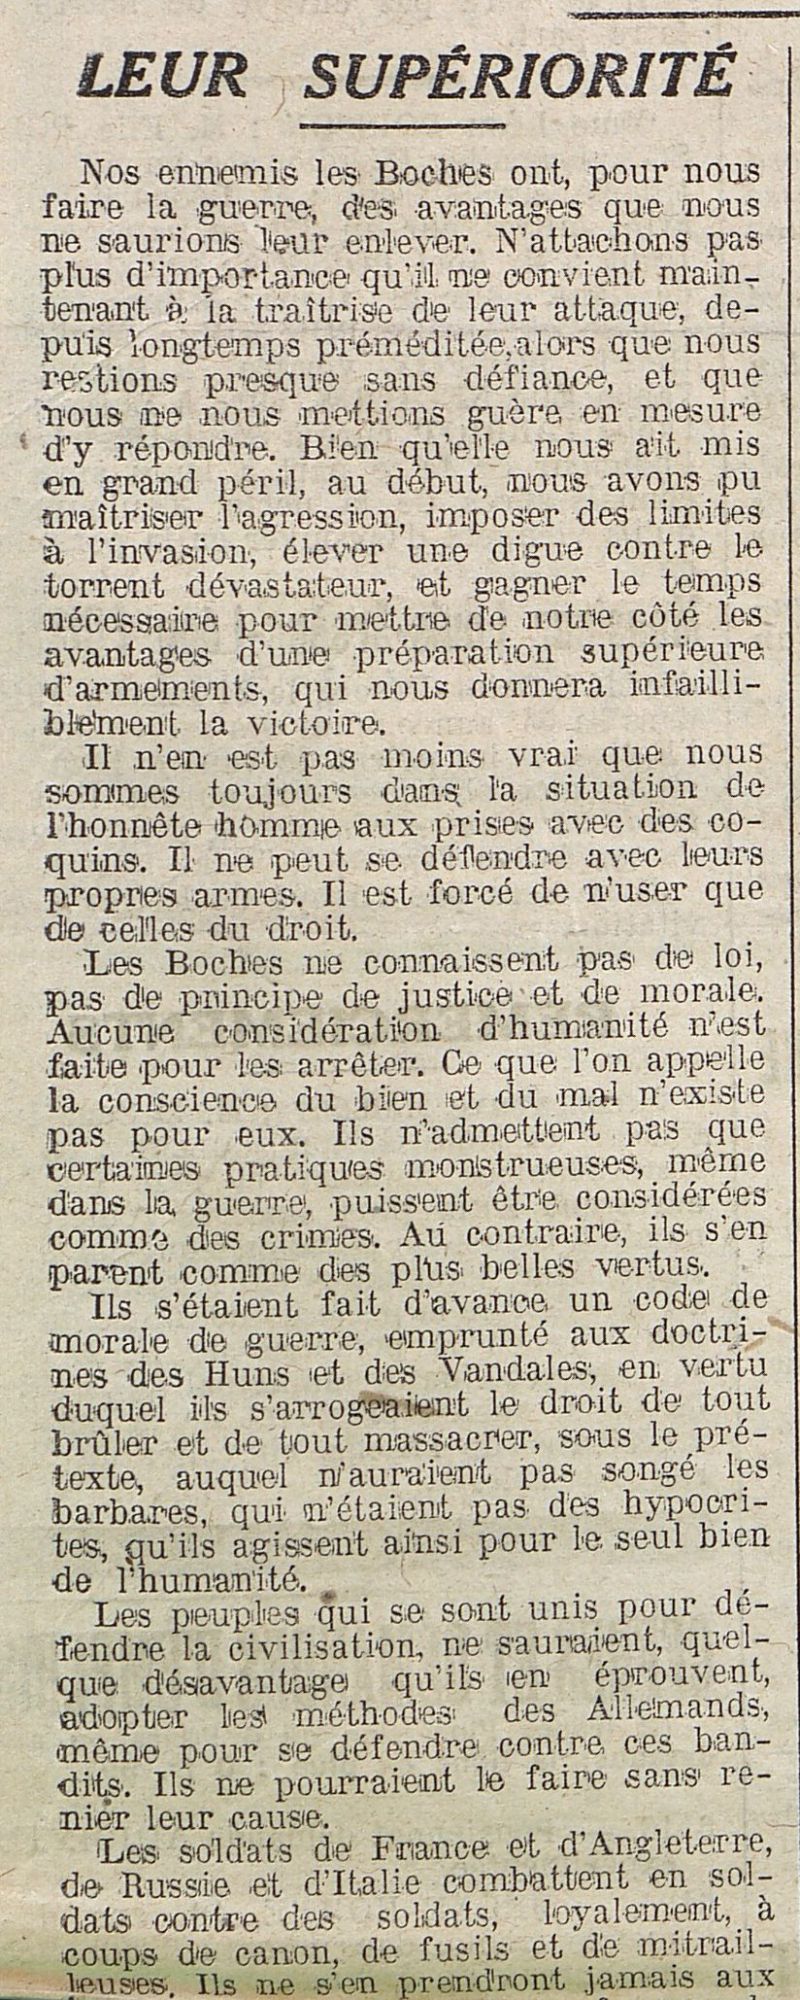 Le Progrès de Saône-et-Loire, 23 janvier 1916. ADSL, PR 97/78